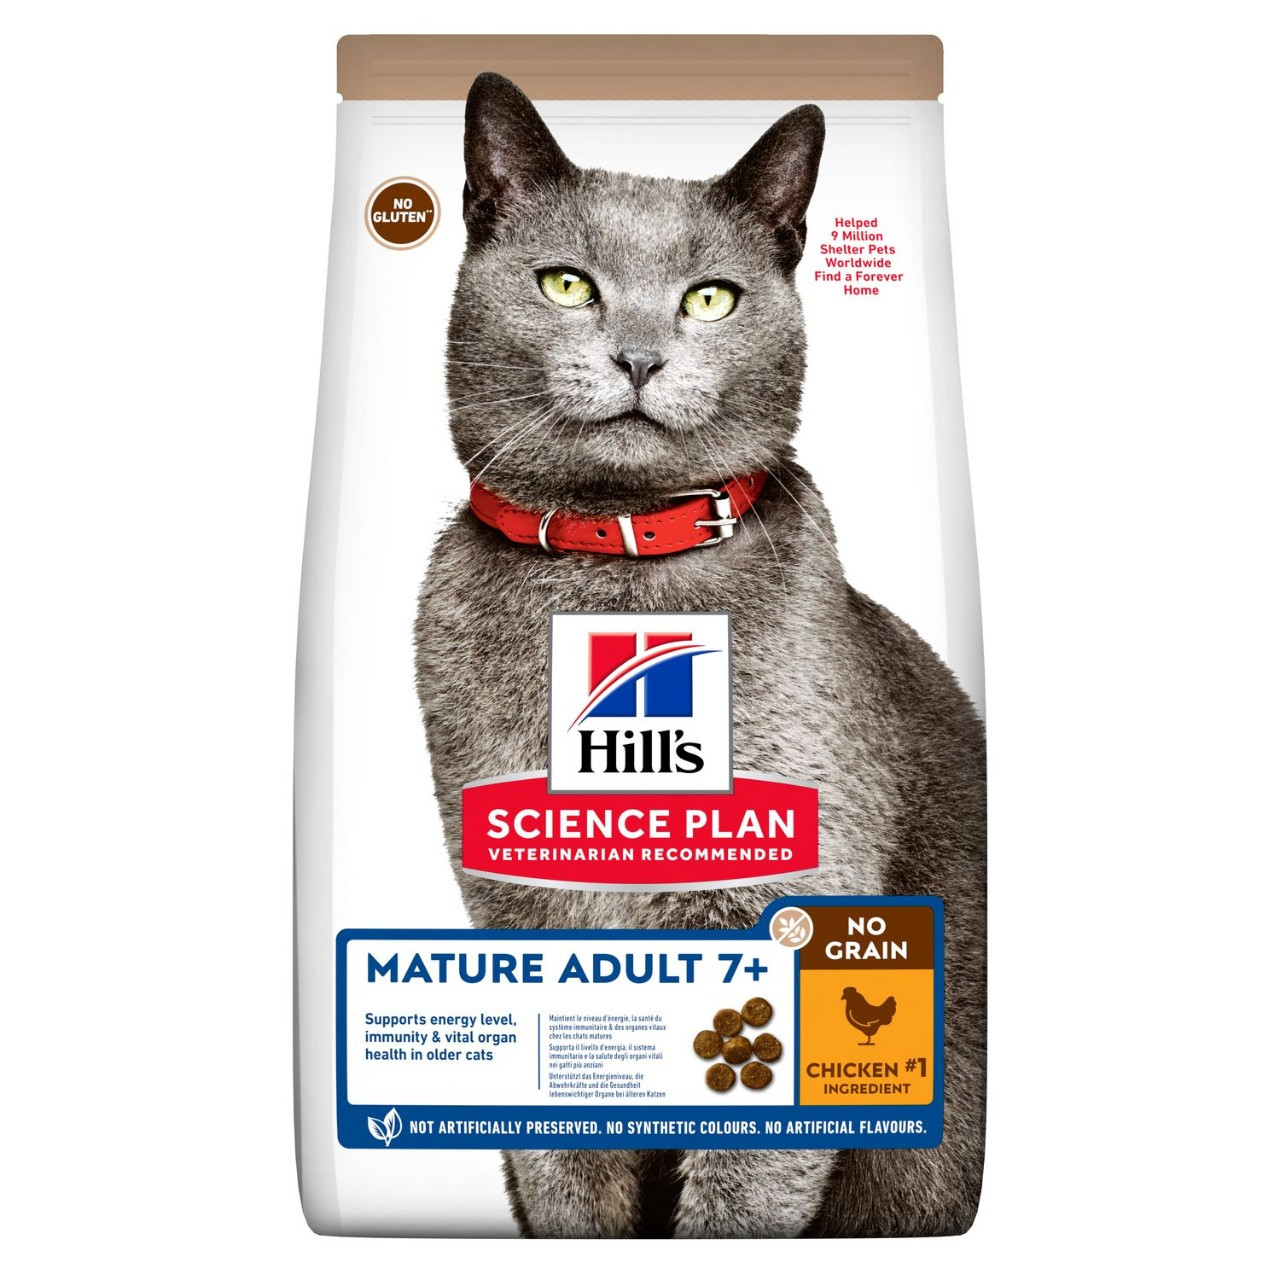 Mature Adult Cat Food No Grain torrfoder med kyckling – 15 kg